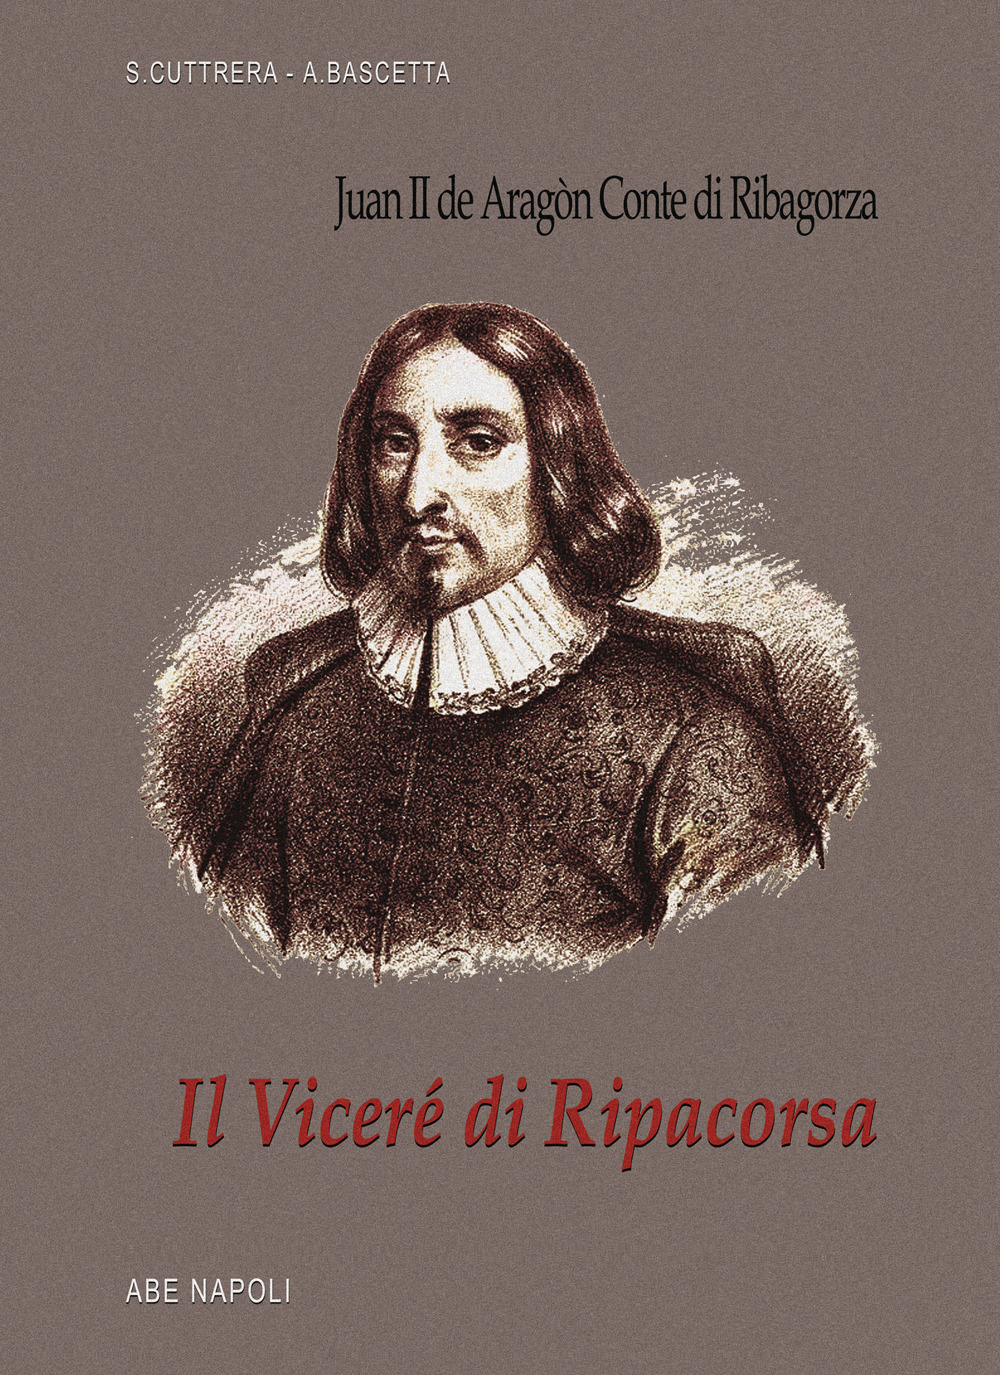 Il viceré di Ripacorsa: Juan de Aragon conte di Ribagorza (1507-1509). I viceré di Napoli. Vol. 1/2